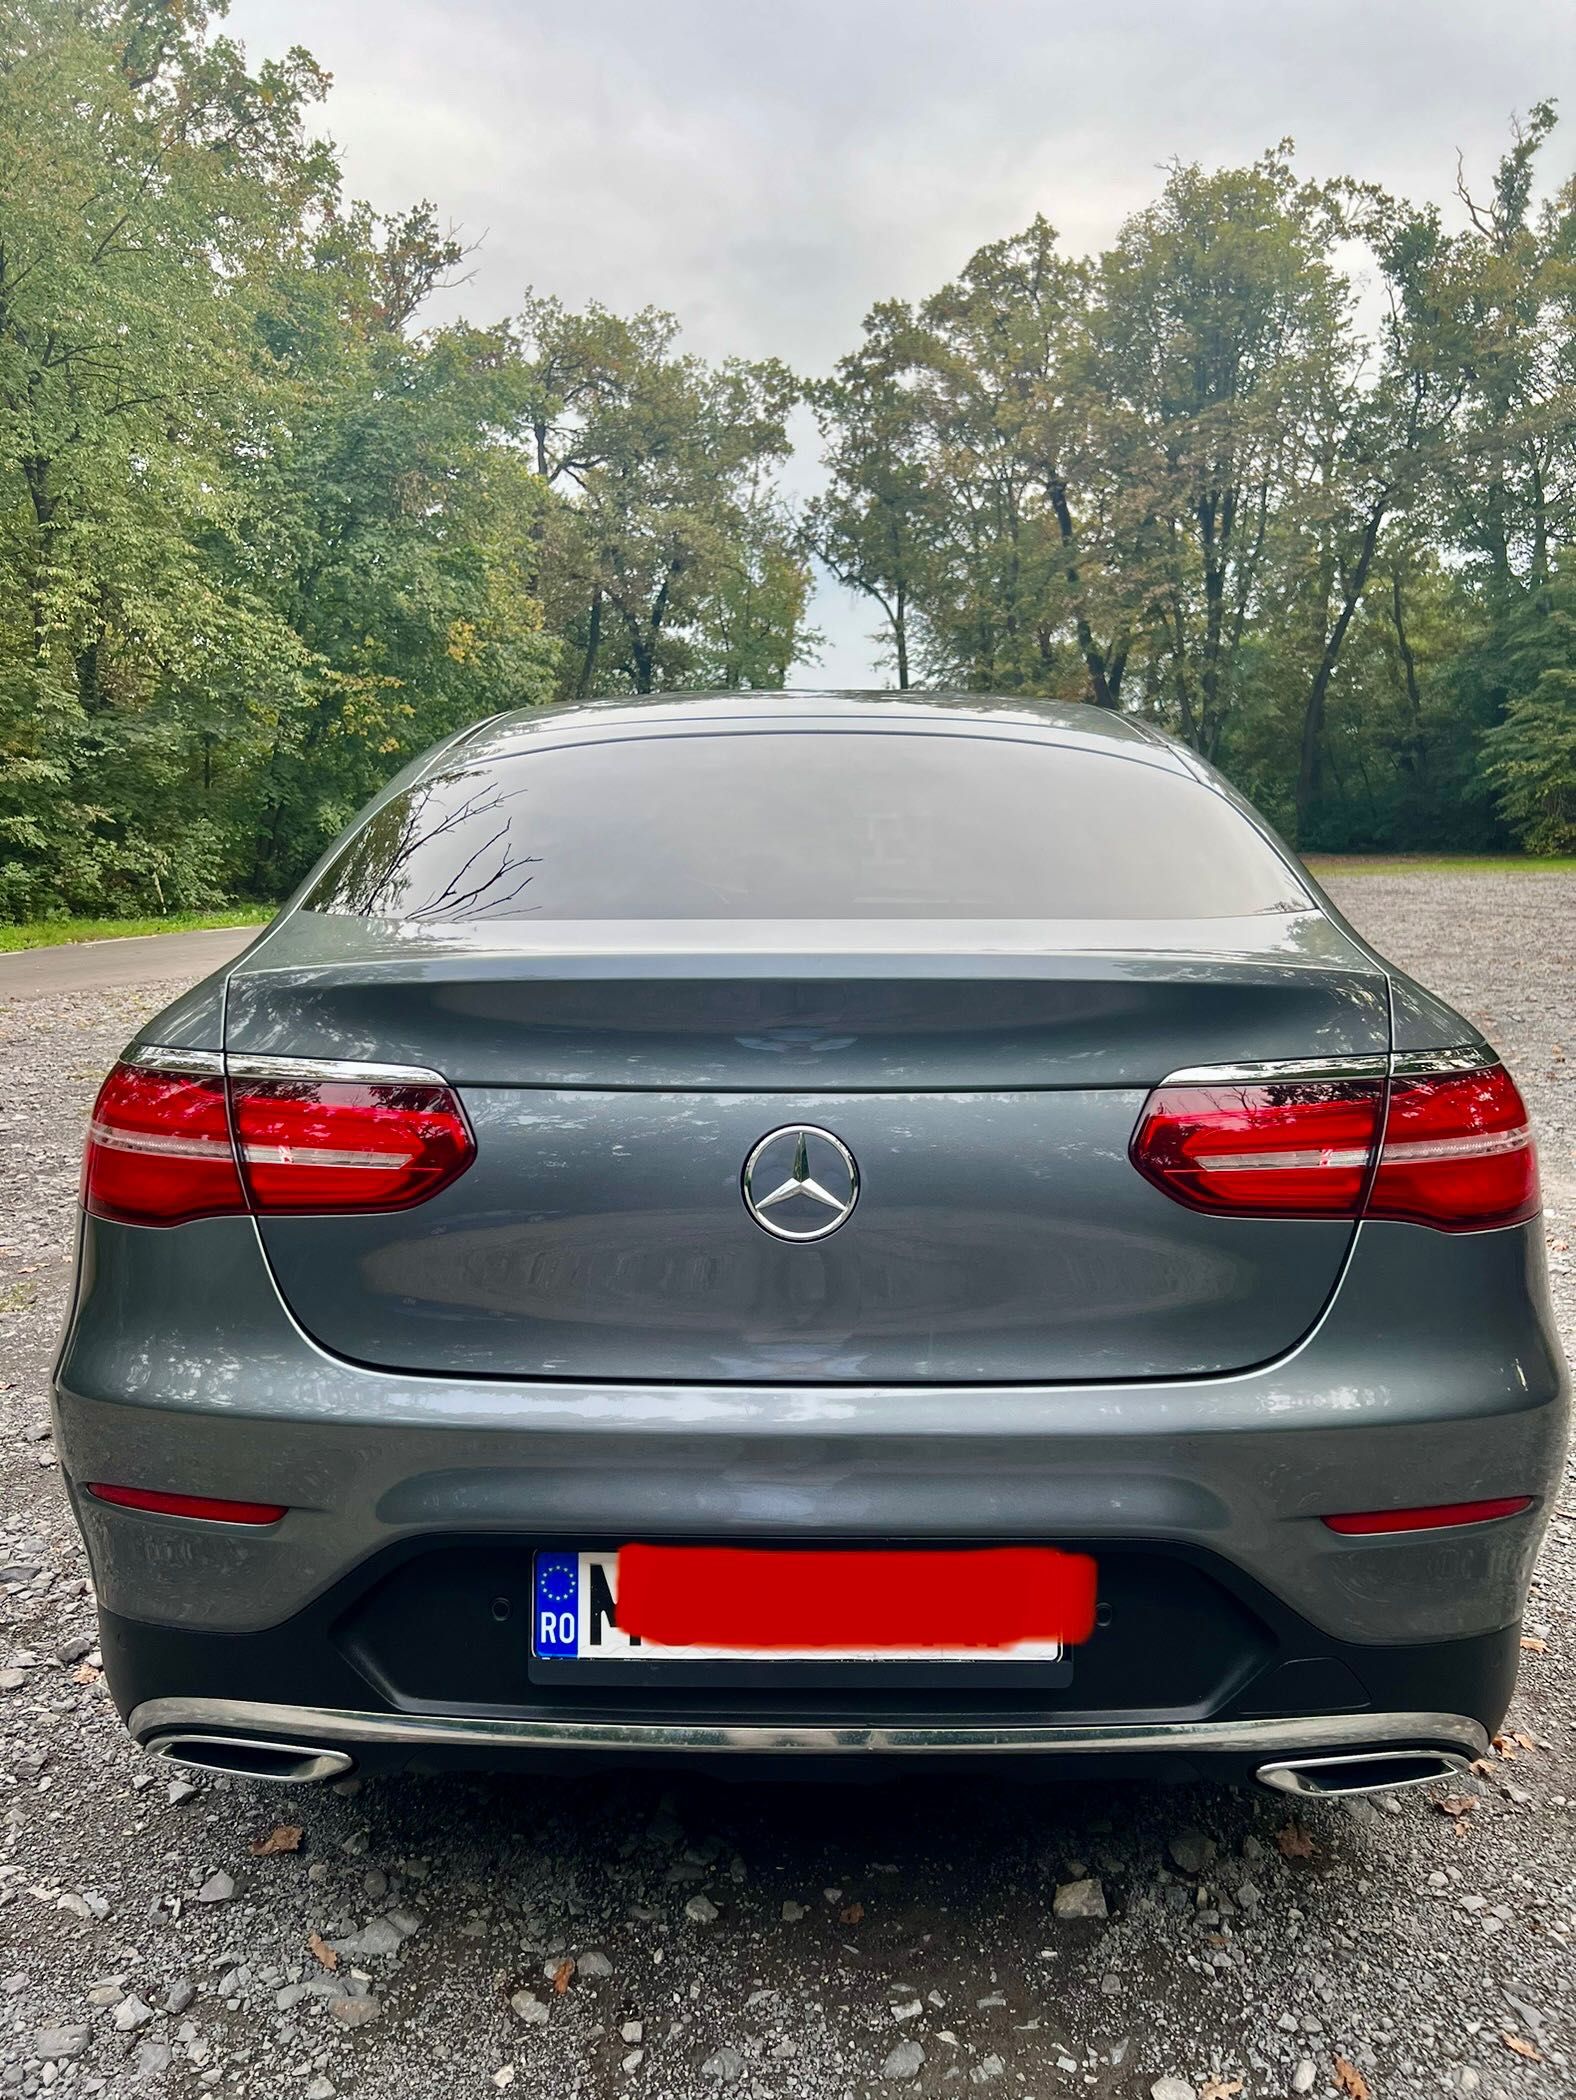 Mercedes-Benz GLC 250 D 4MATIC | 2017 | Gri închis | 4X4 | 204CP